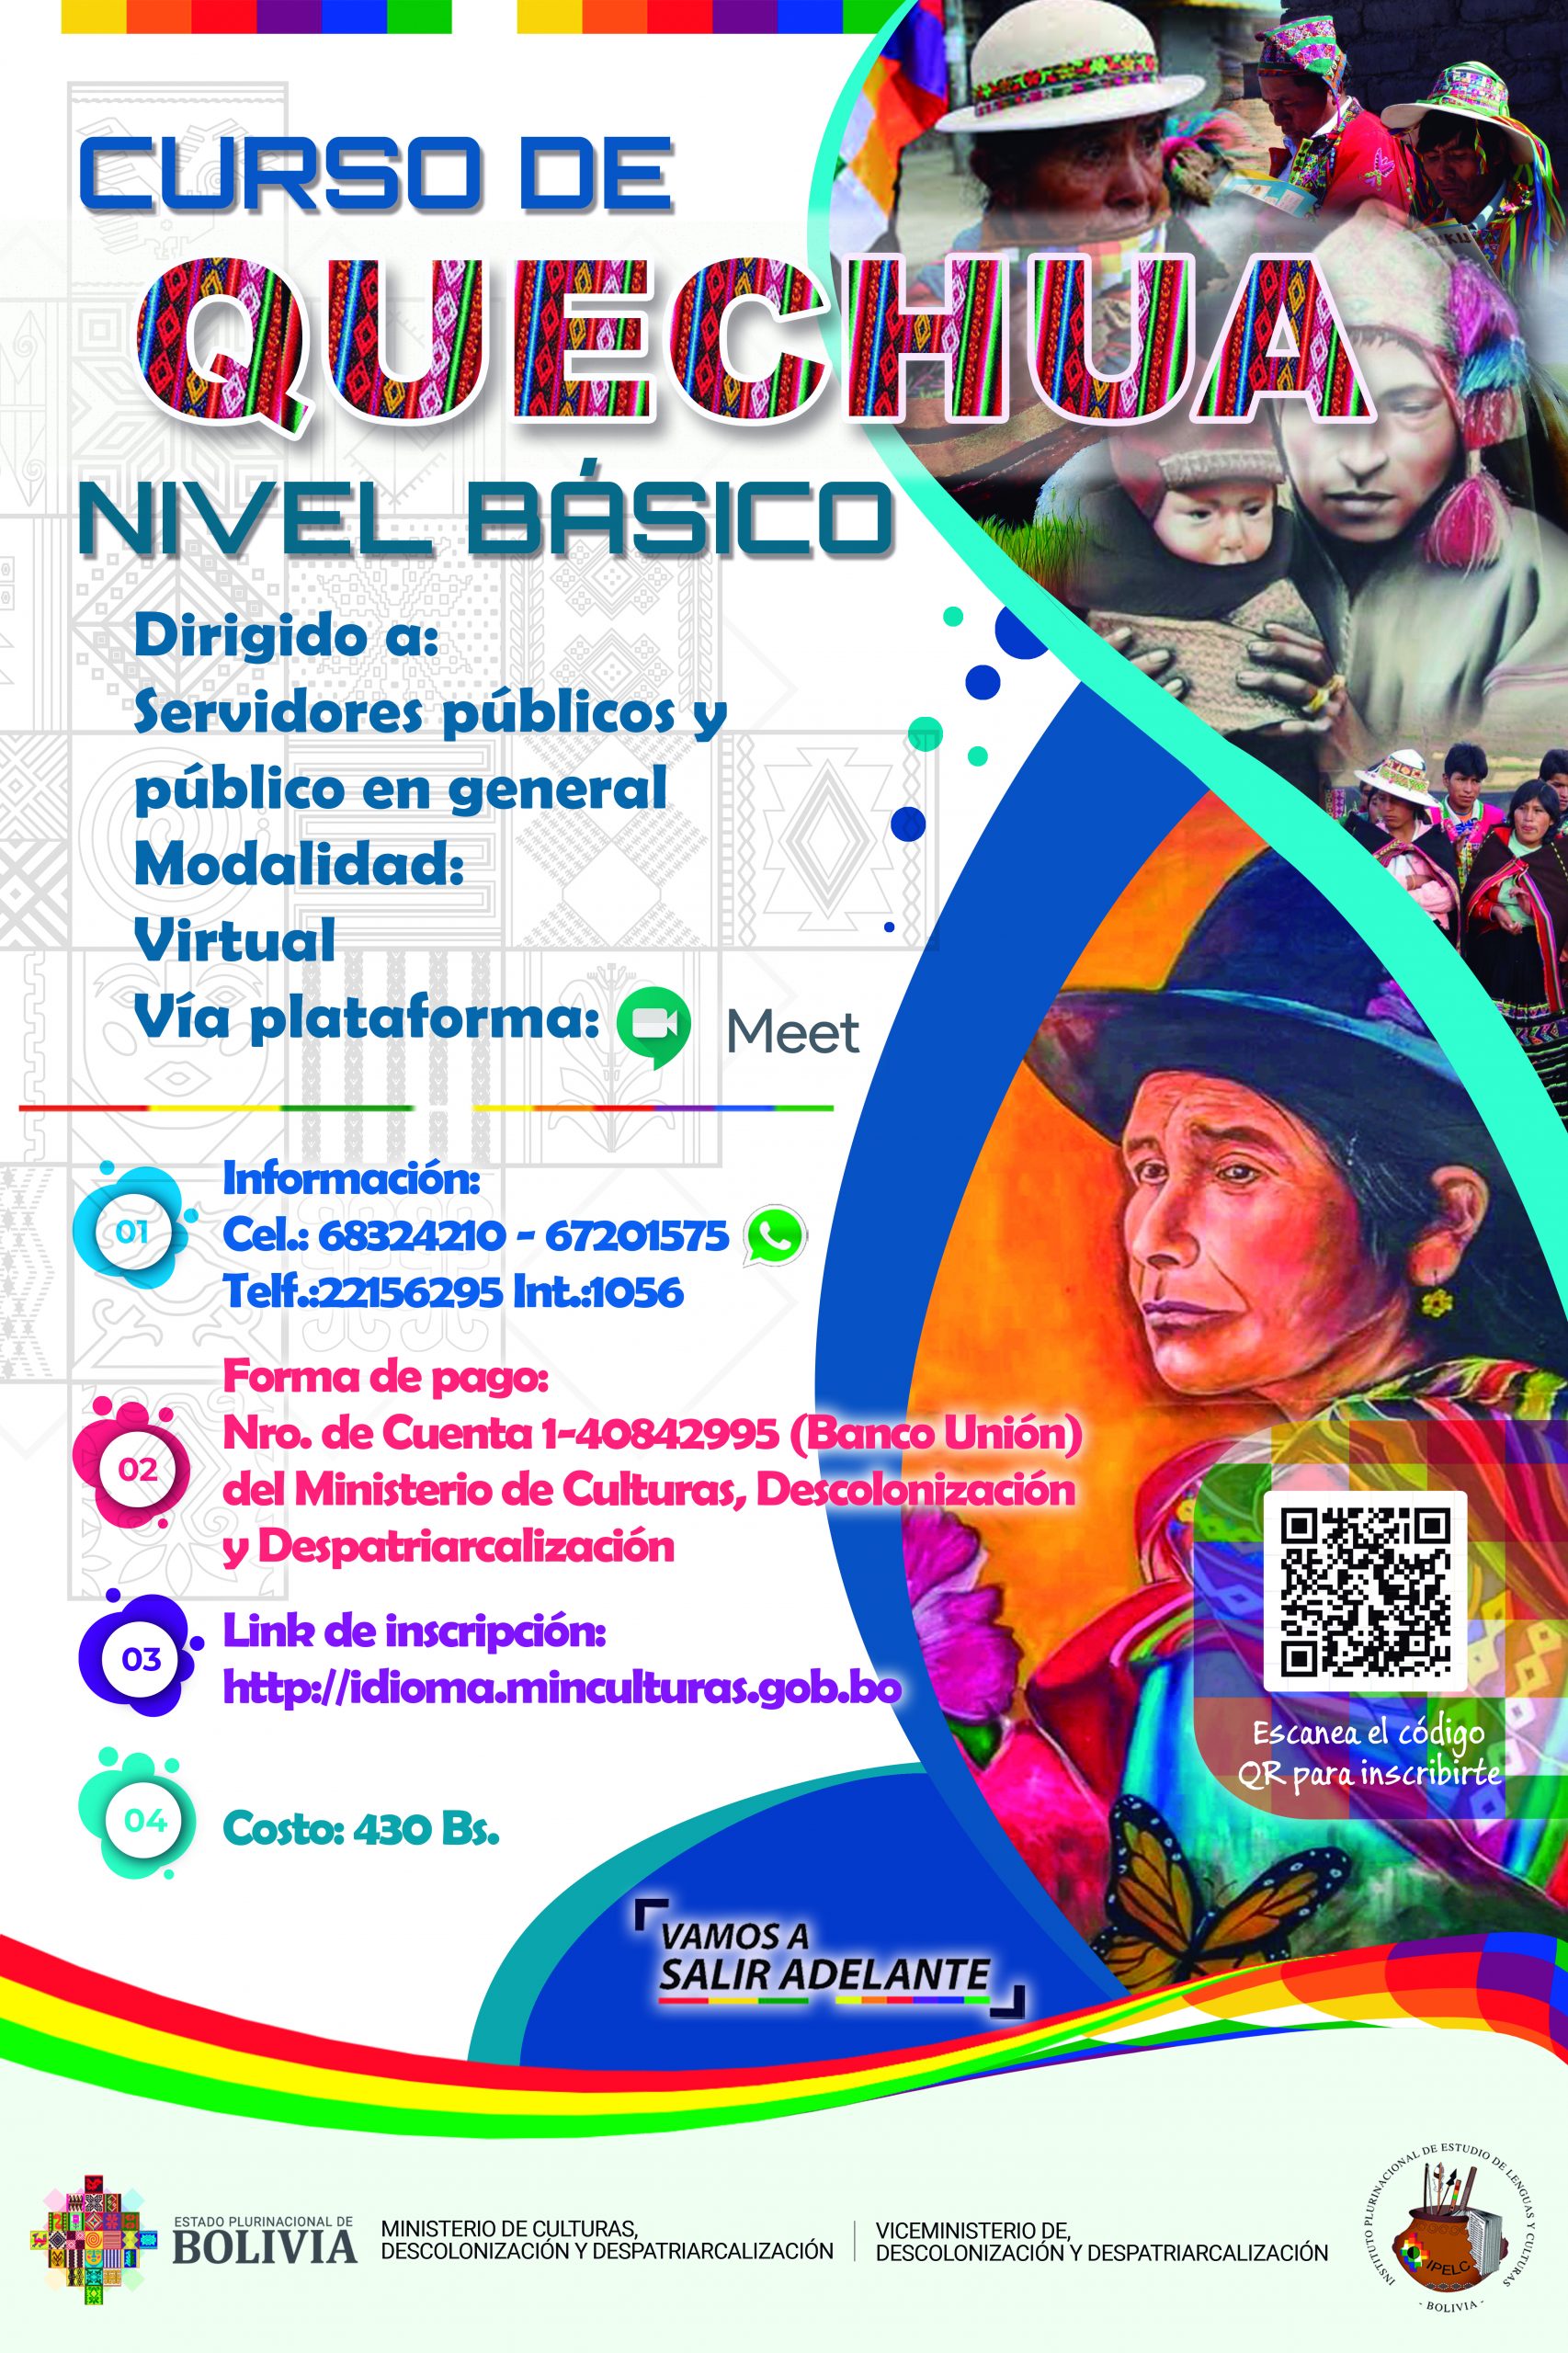 Cursos de idiomas Quechua y Aymara nivel básico.